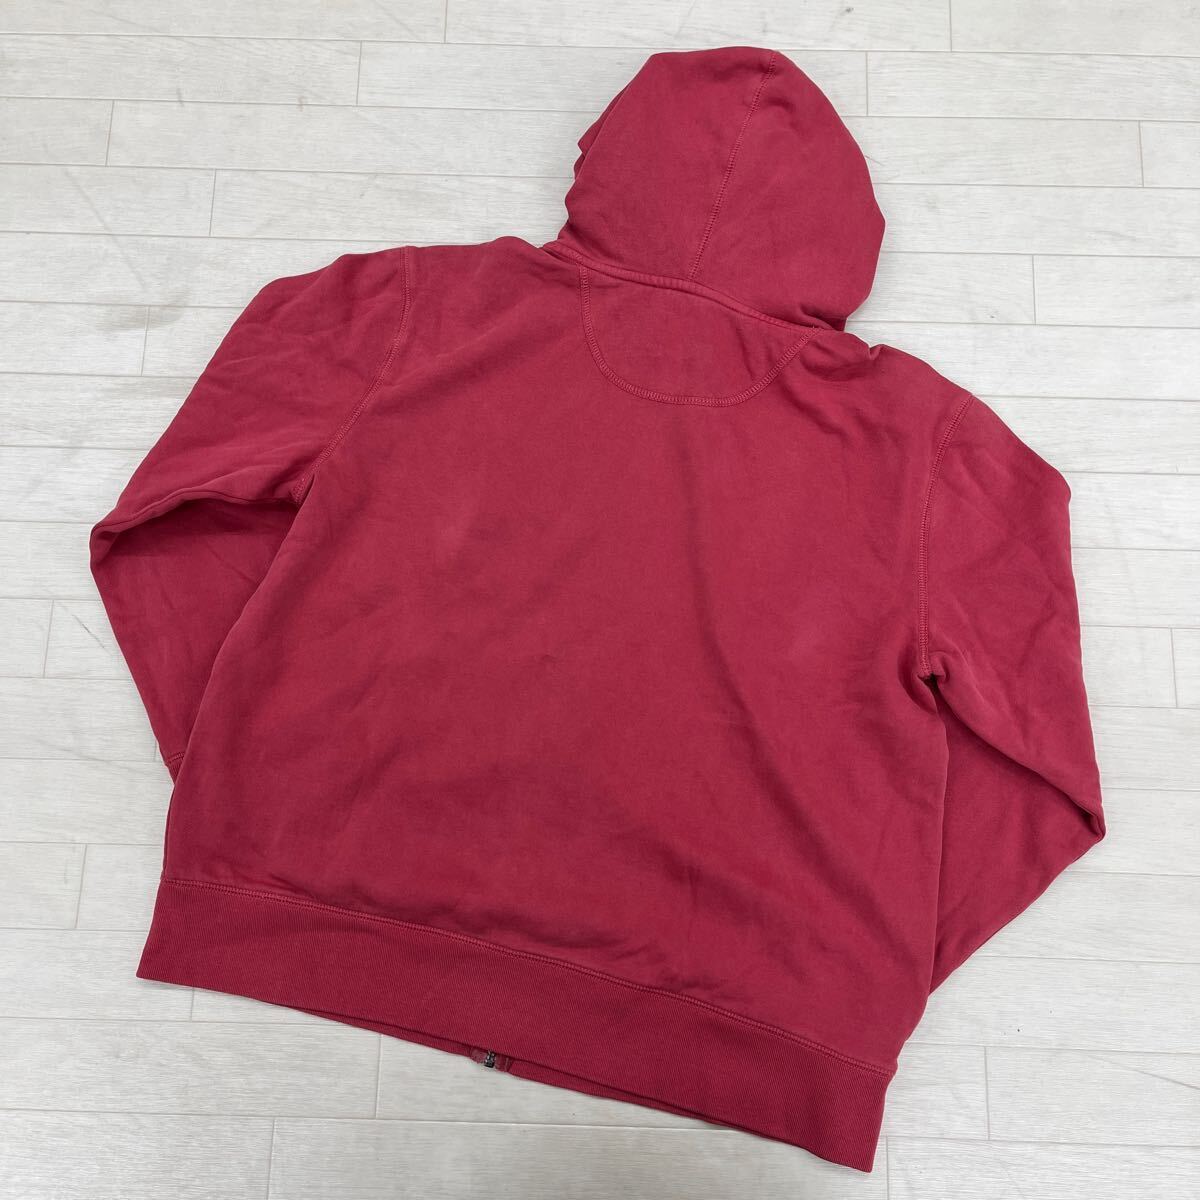 1370* new goods unused GAP Gap tops sweat sweatshirt Parker jacket full Zip plain pink men's XL